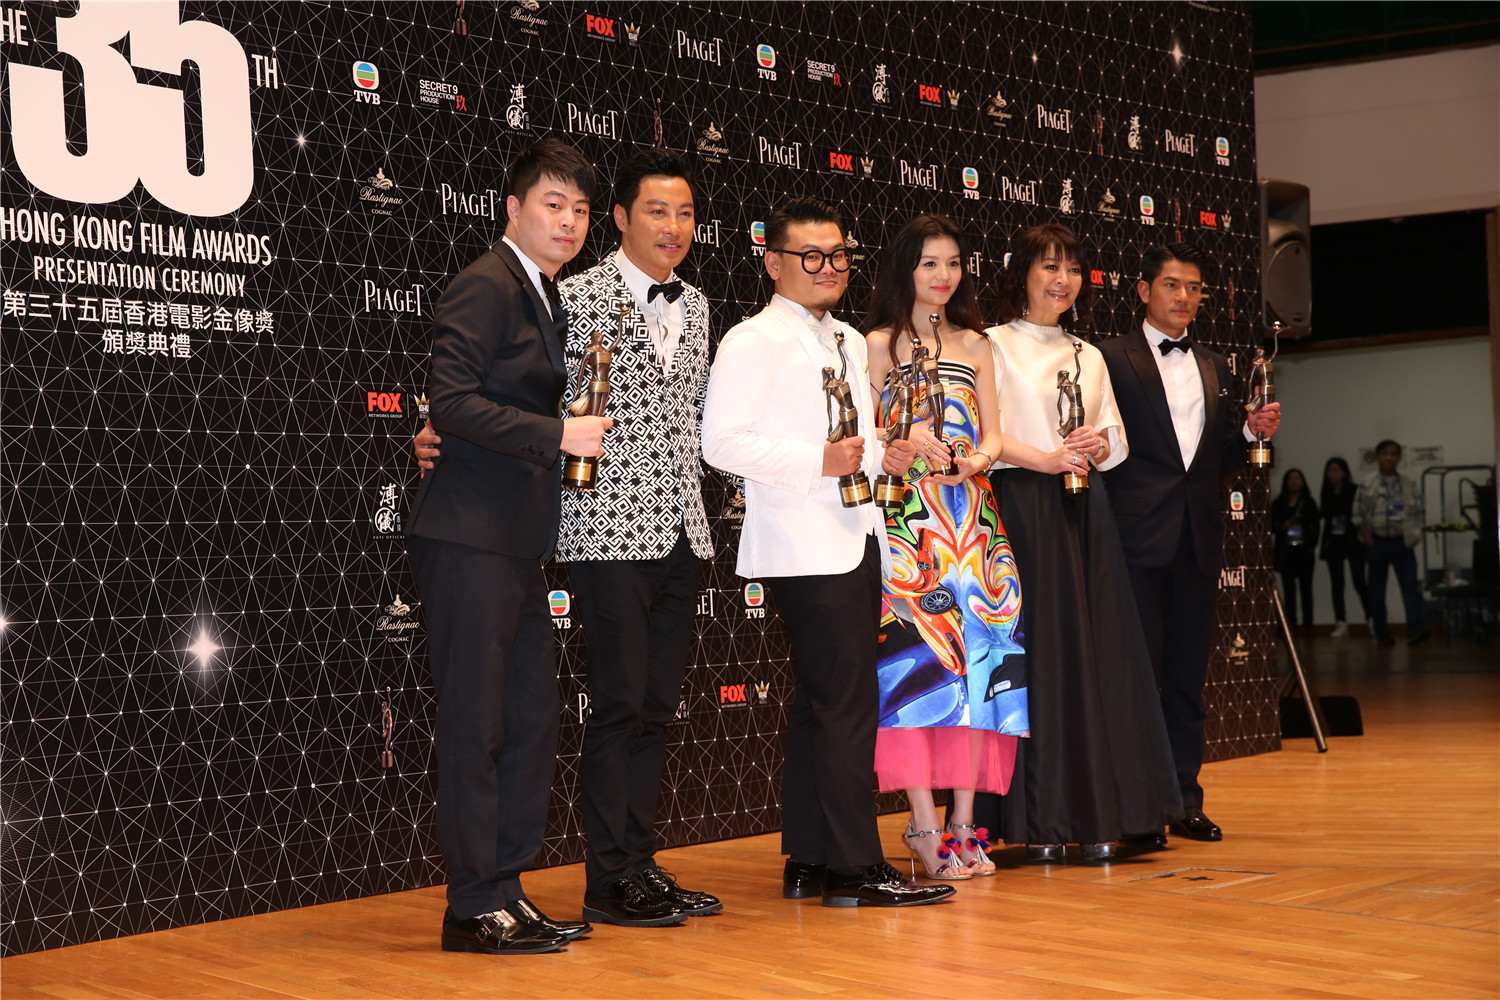 《踏血尋梅》成為第35屆香港金像獎頒獎典禮大贏家